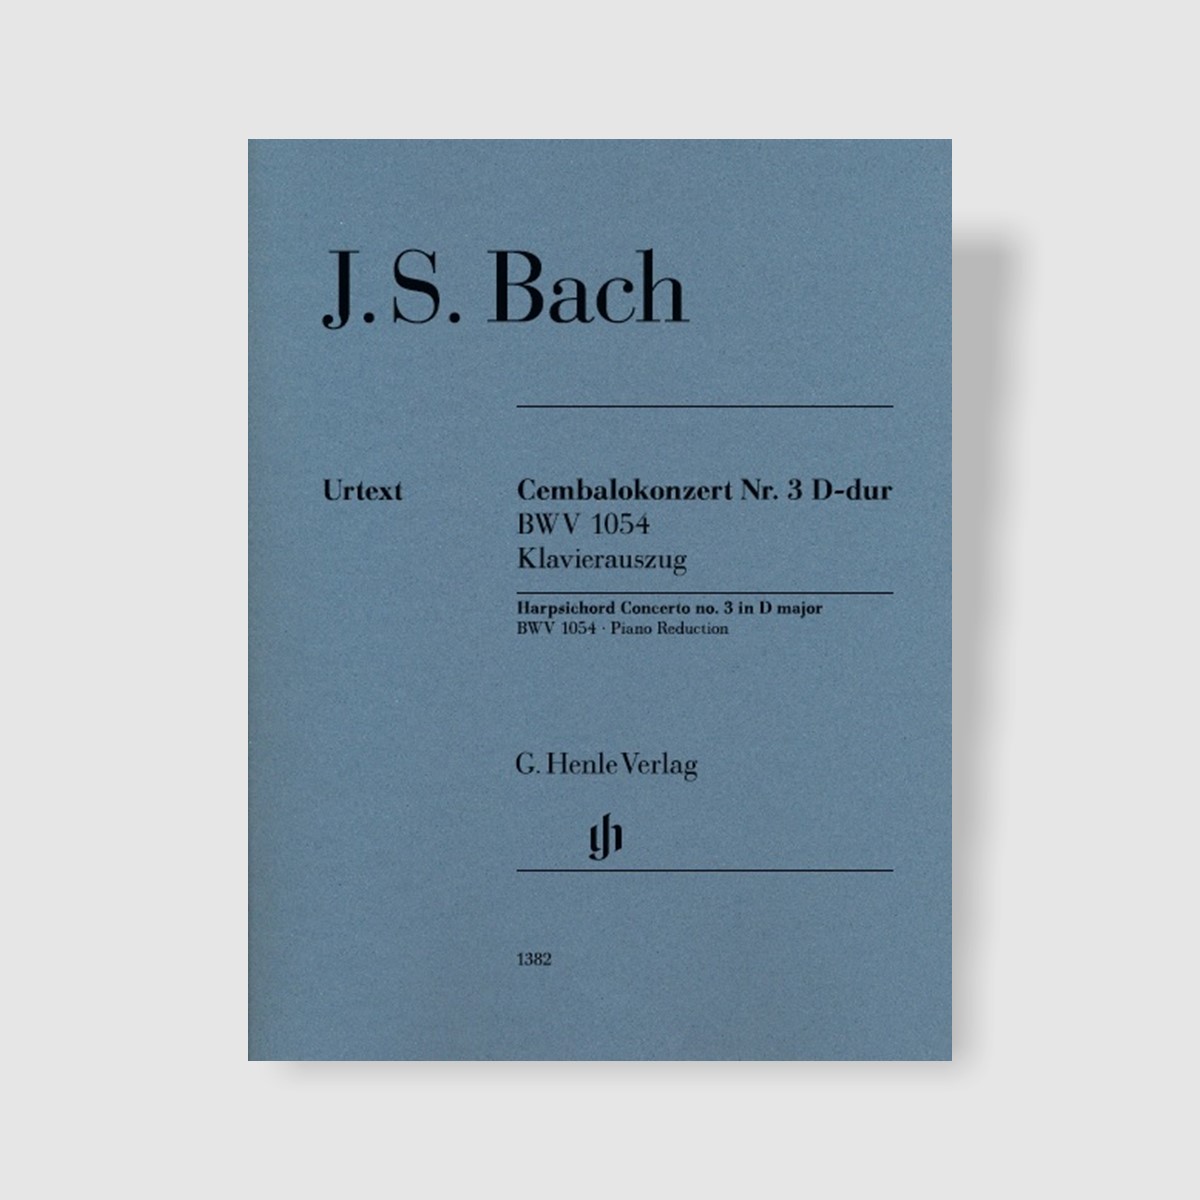 바흐 하프시코드 협주곡 No. 3 in D Major, BWV 1054